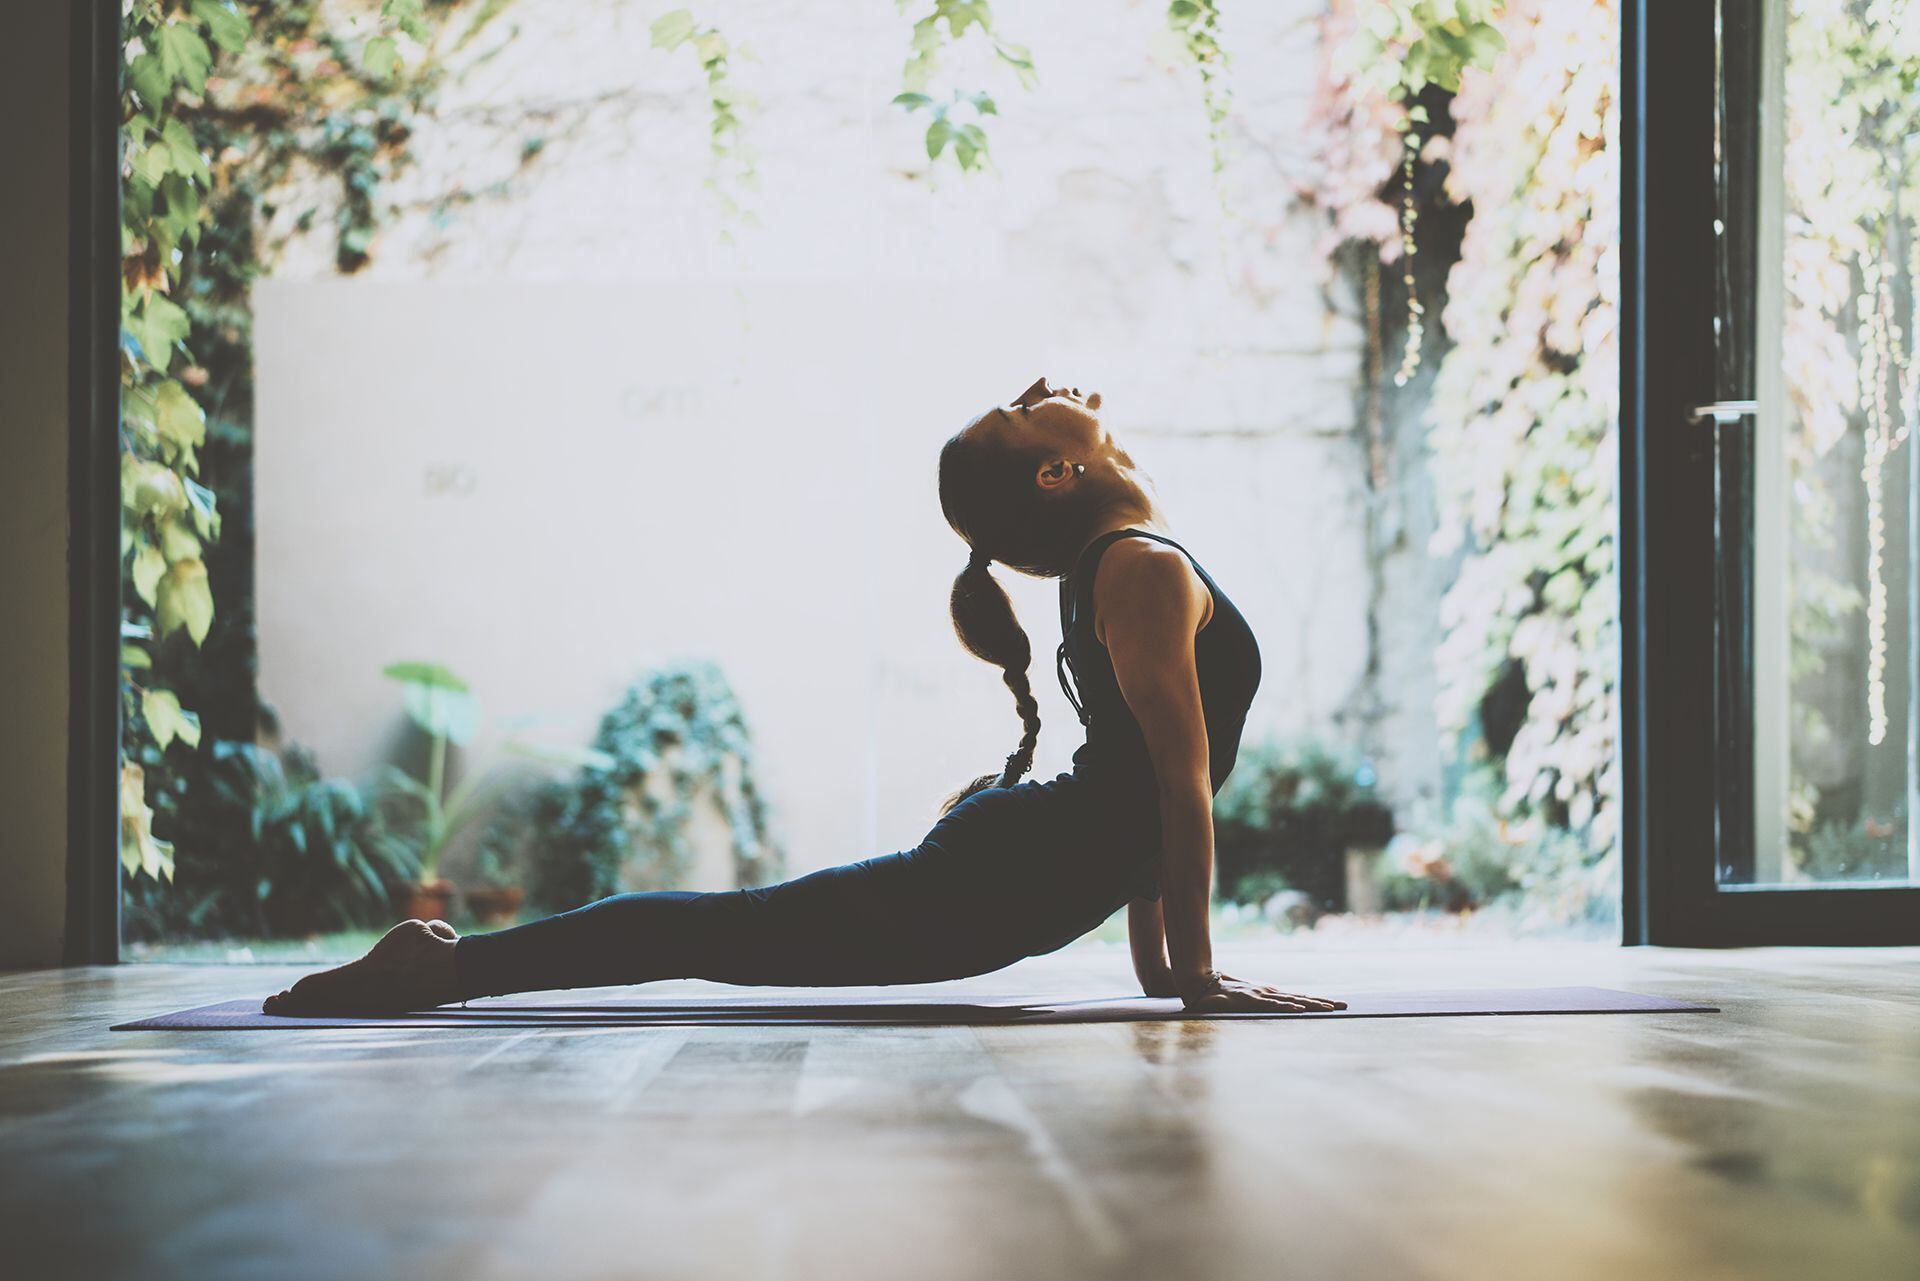 El yoga utiliza diferentes ejercicios conocidos como posturas o "asanas" para fortalecer la mente y el cuerpo con ayuda de la respiración